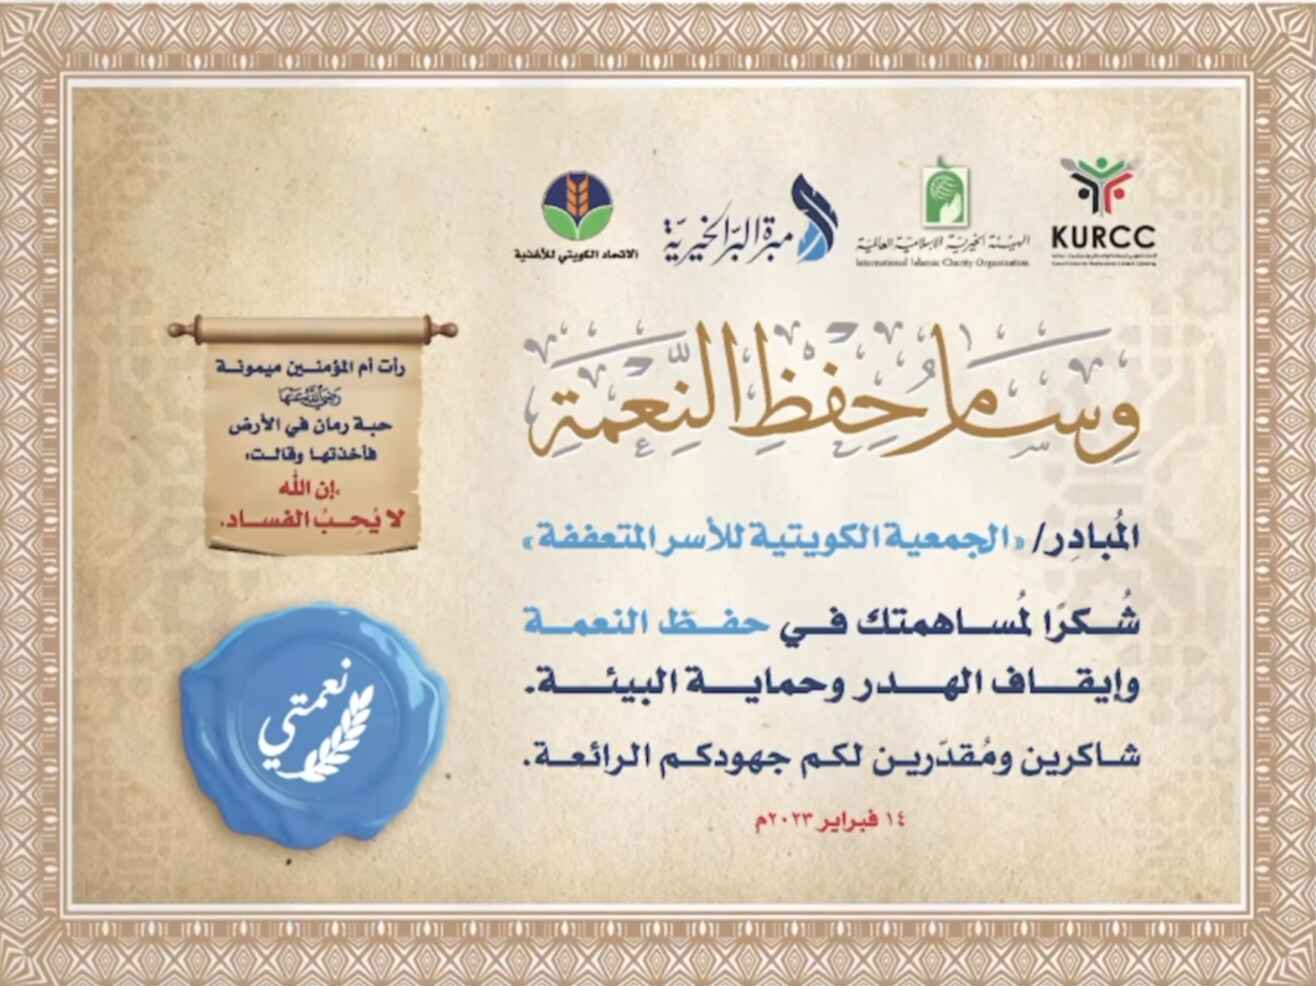 تكريم «الجمعية الكويتية للأسر المتعففة» بوسام حفظ النعمة